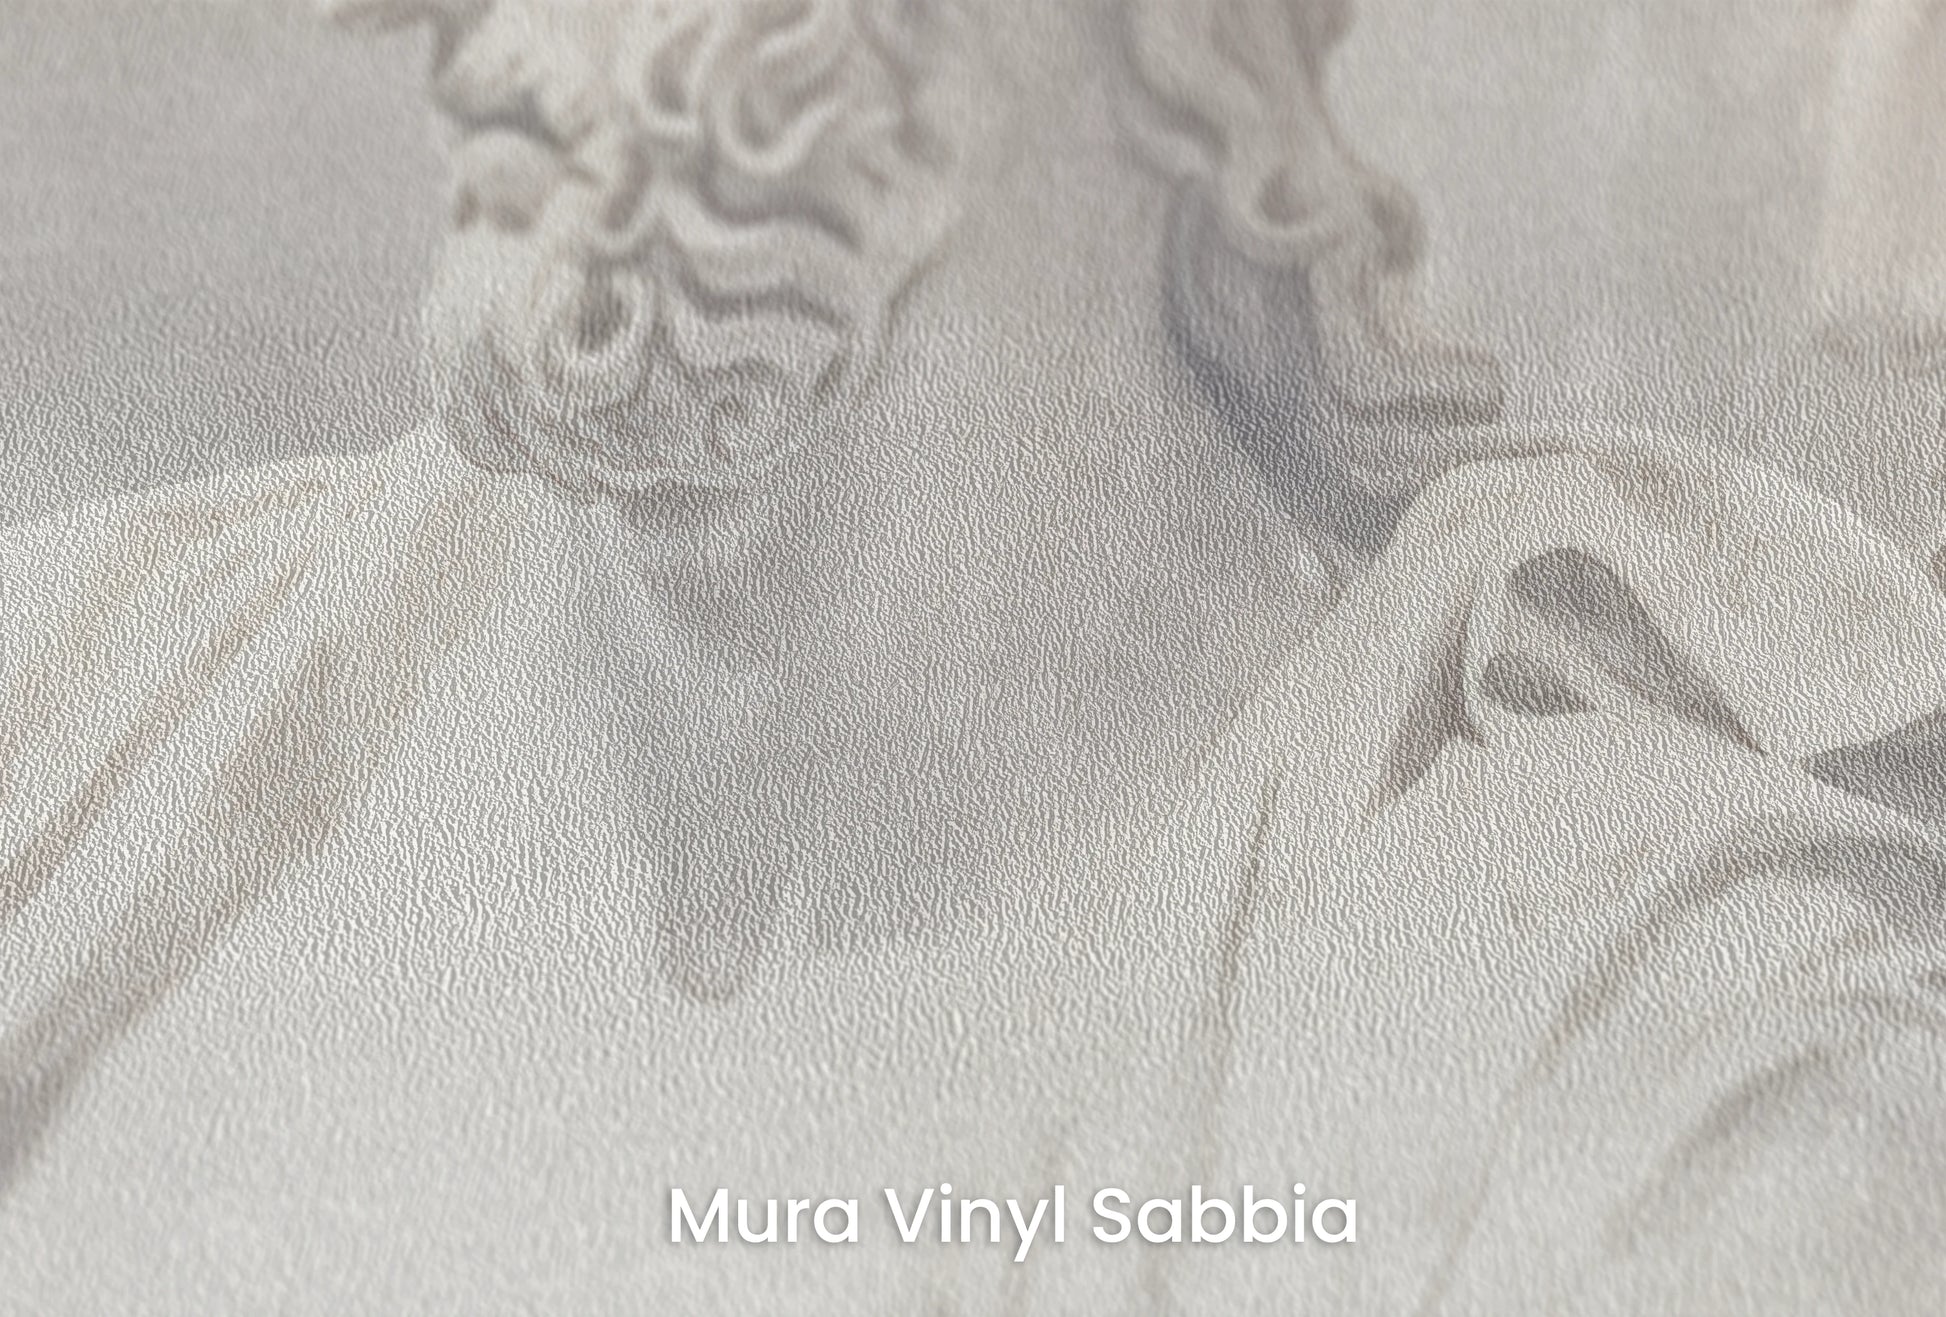 Zbliżenie na artystyczną fototapetę o nazwie Serene Titans na podłożu Mura Vinyl Sabbia struktura grubego ziarna piasku.